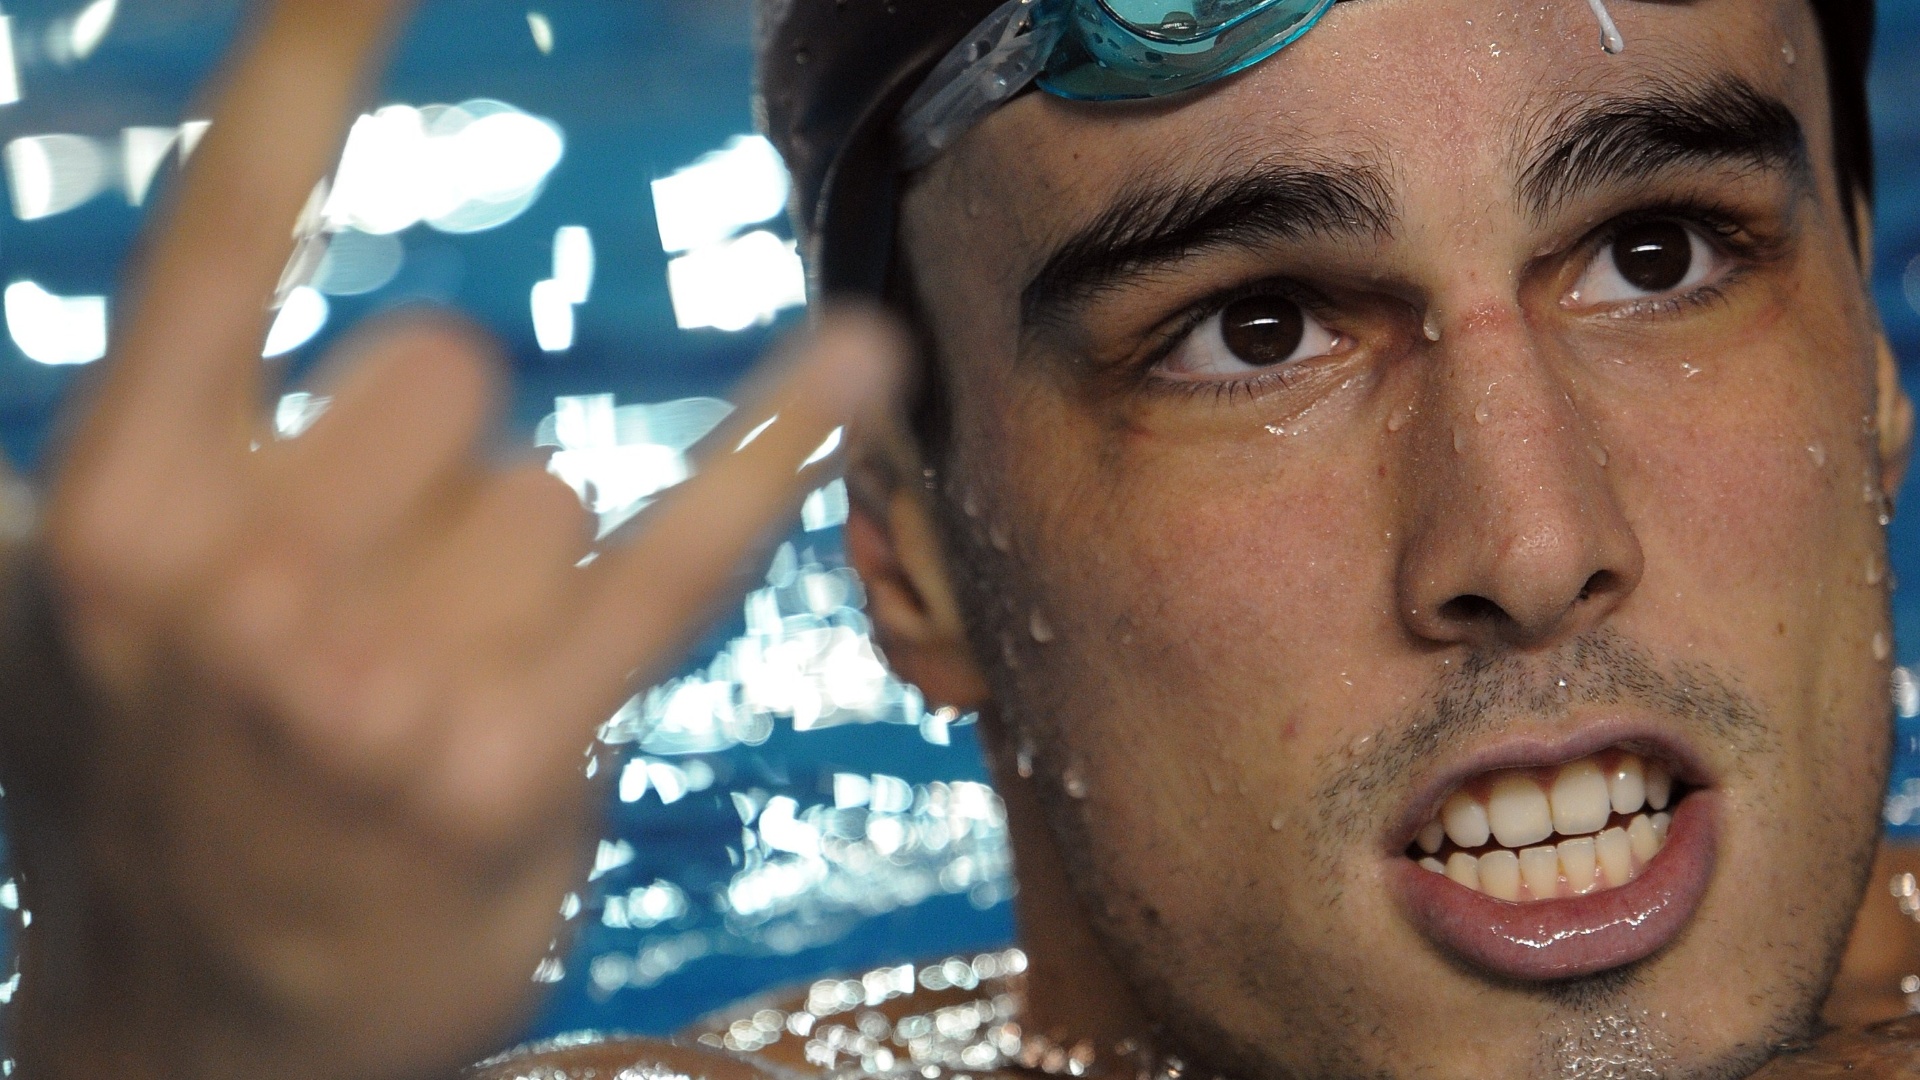 Bruno Fratus é uma das apostas da natação do Brasil para as provas de velocidade no Pan de Guadalajara